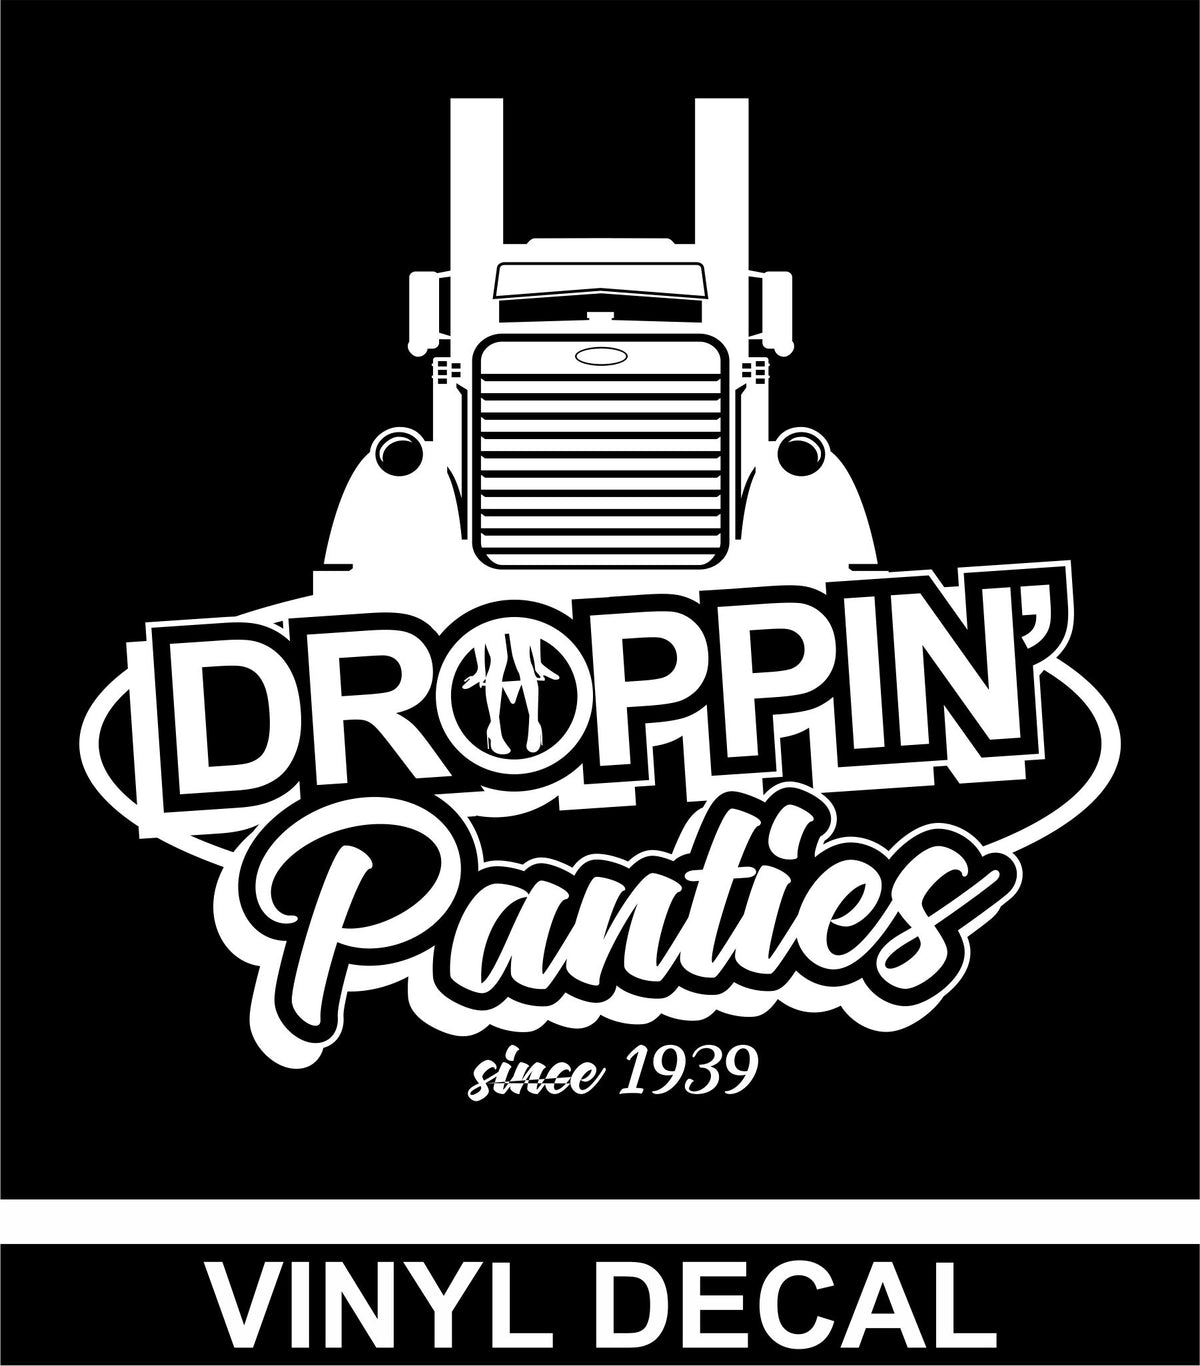 Droppin' Panties since 1939 - Peterbilt Vinyl Decal - Free Shipping